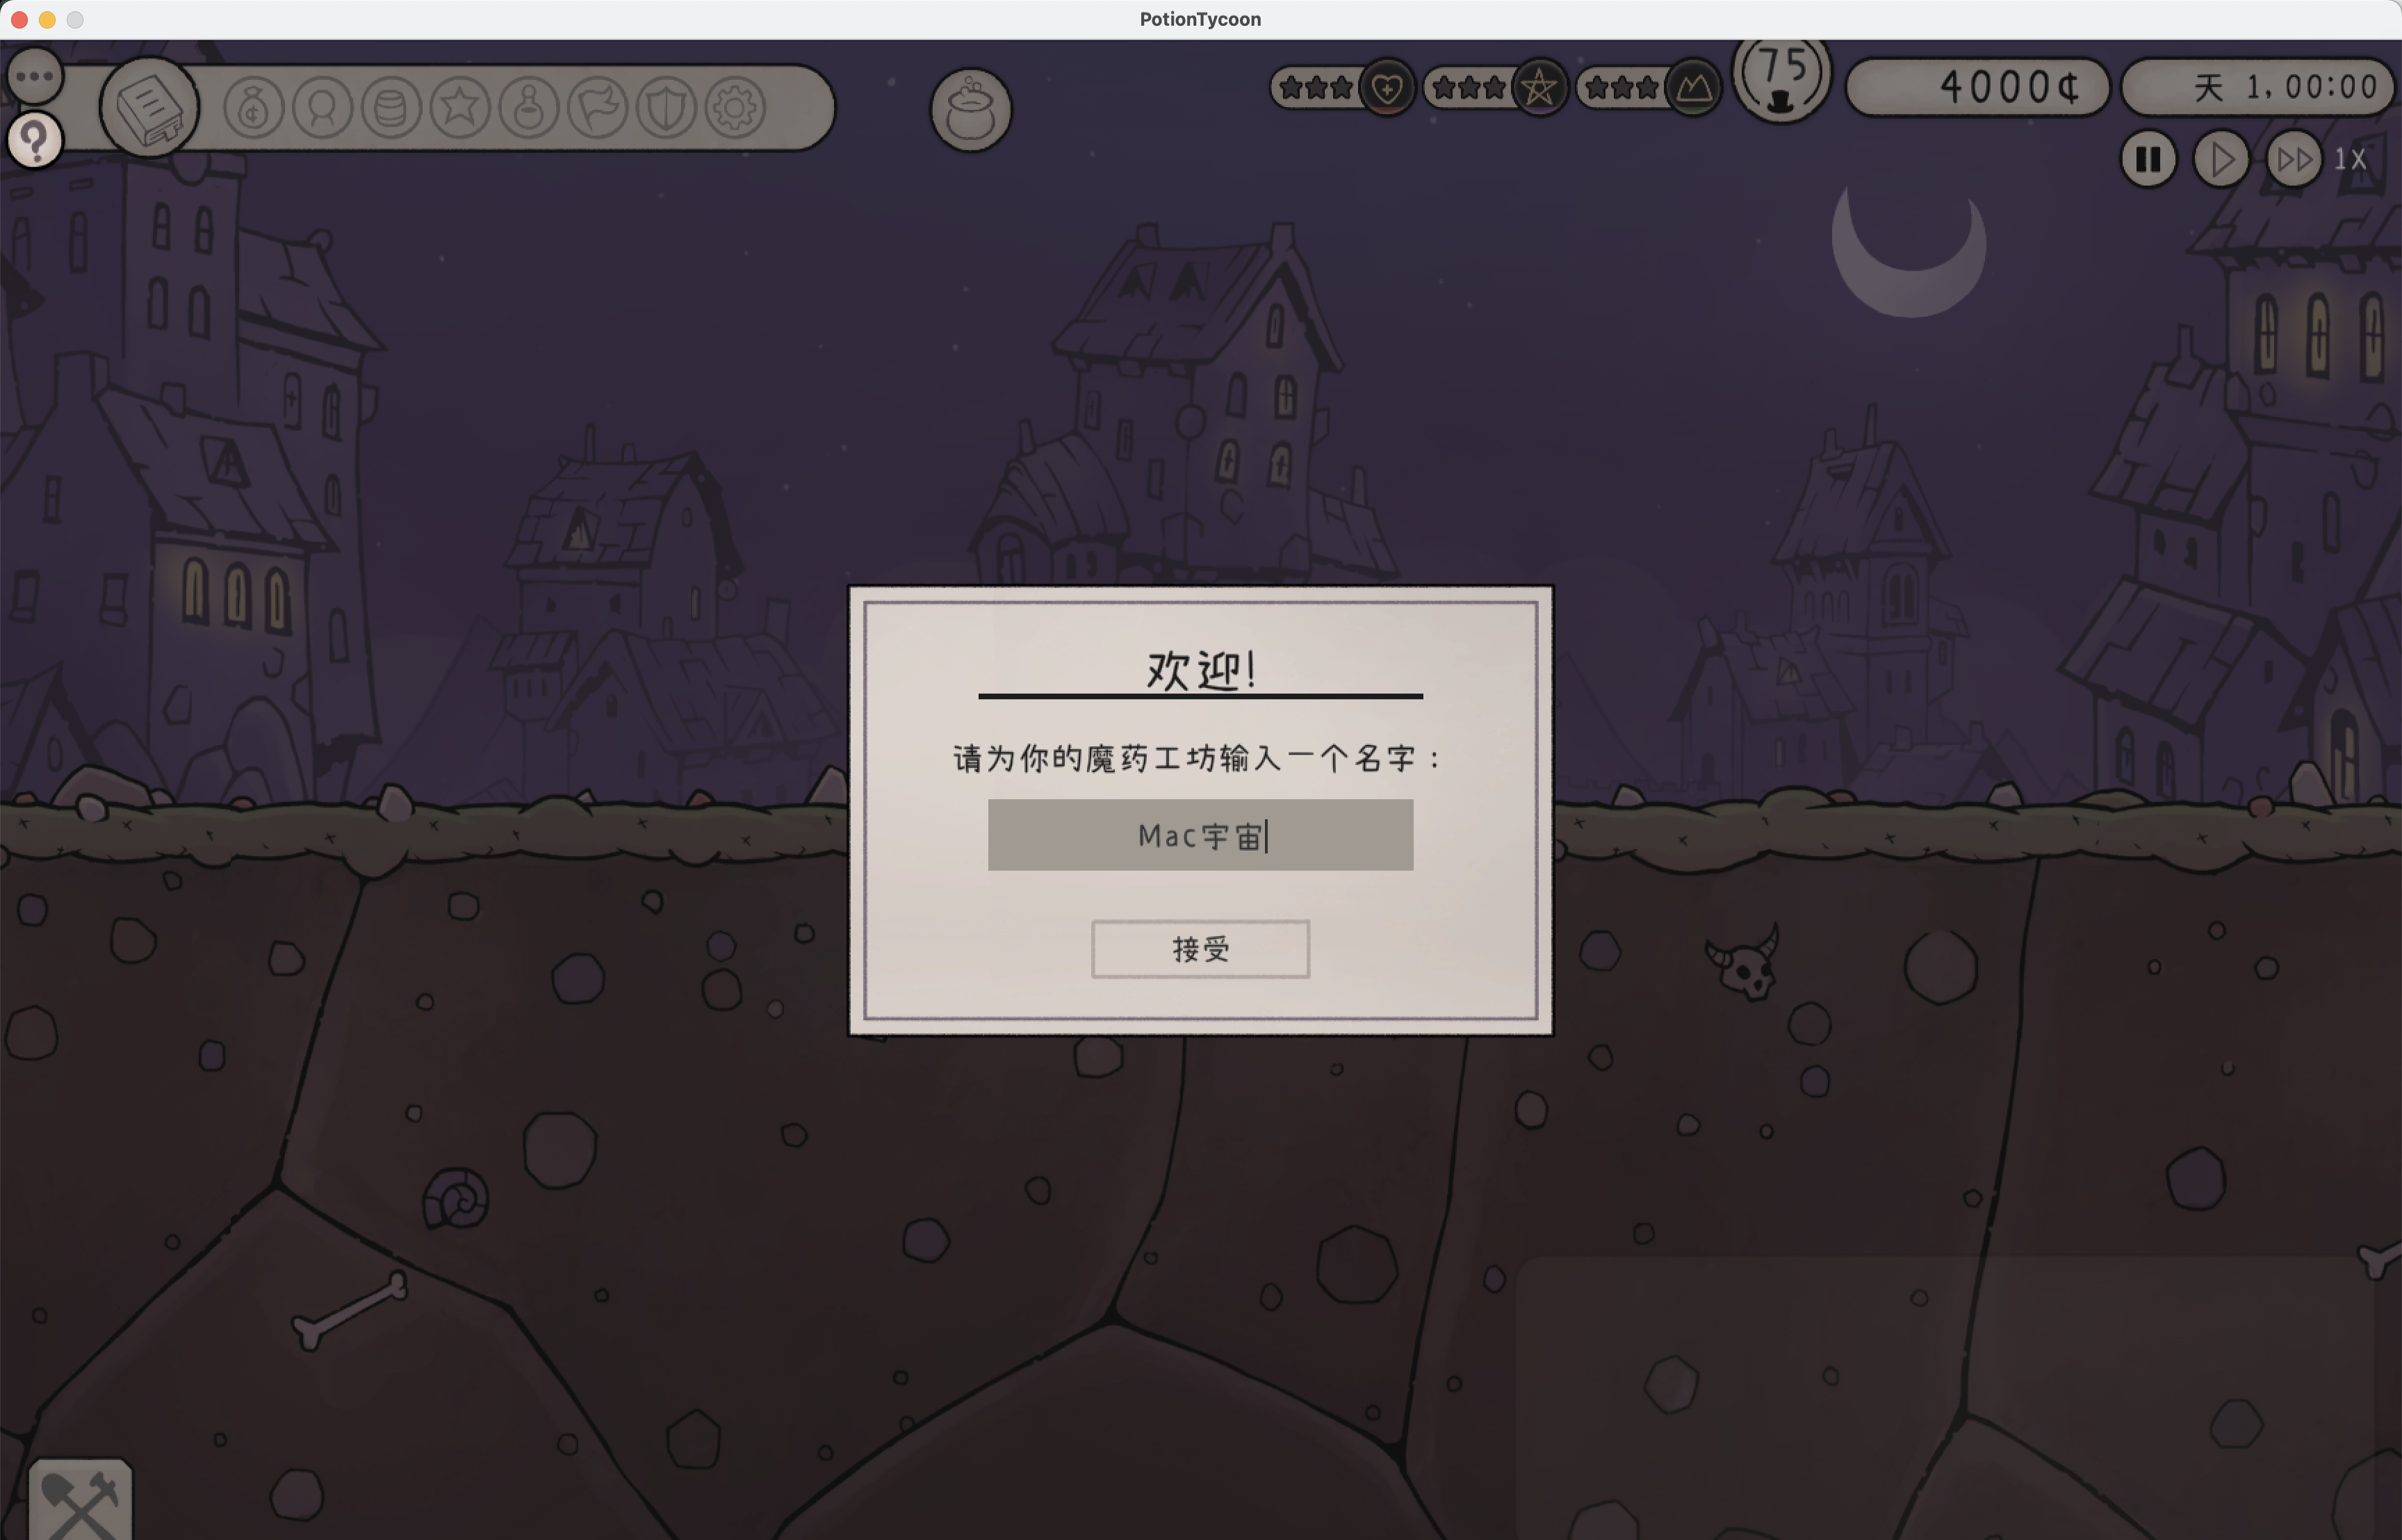 药剂大亨 for Mac v0.9.41 Potion Tycoon 中文移植版 苹果电脑